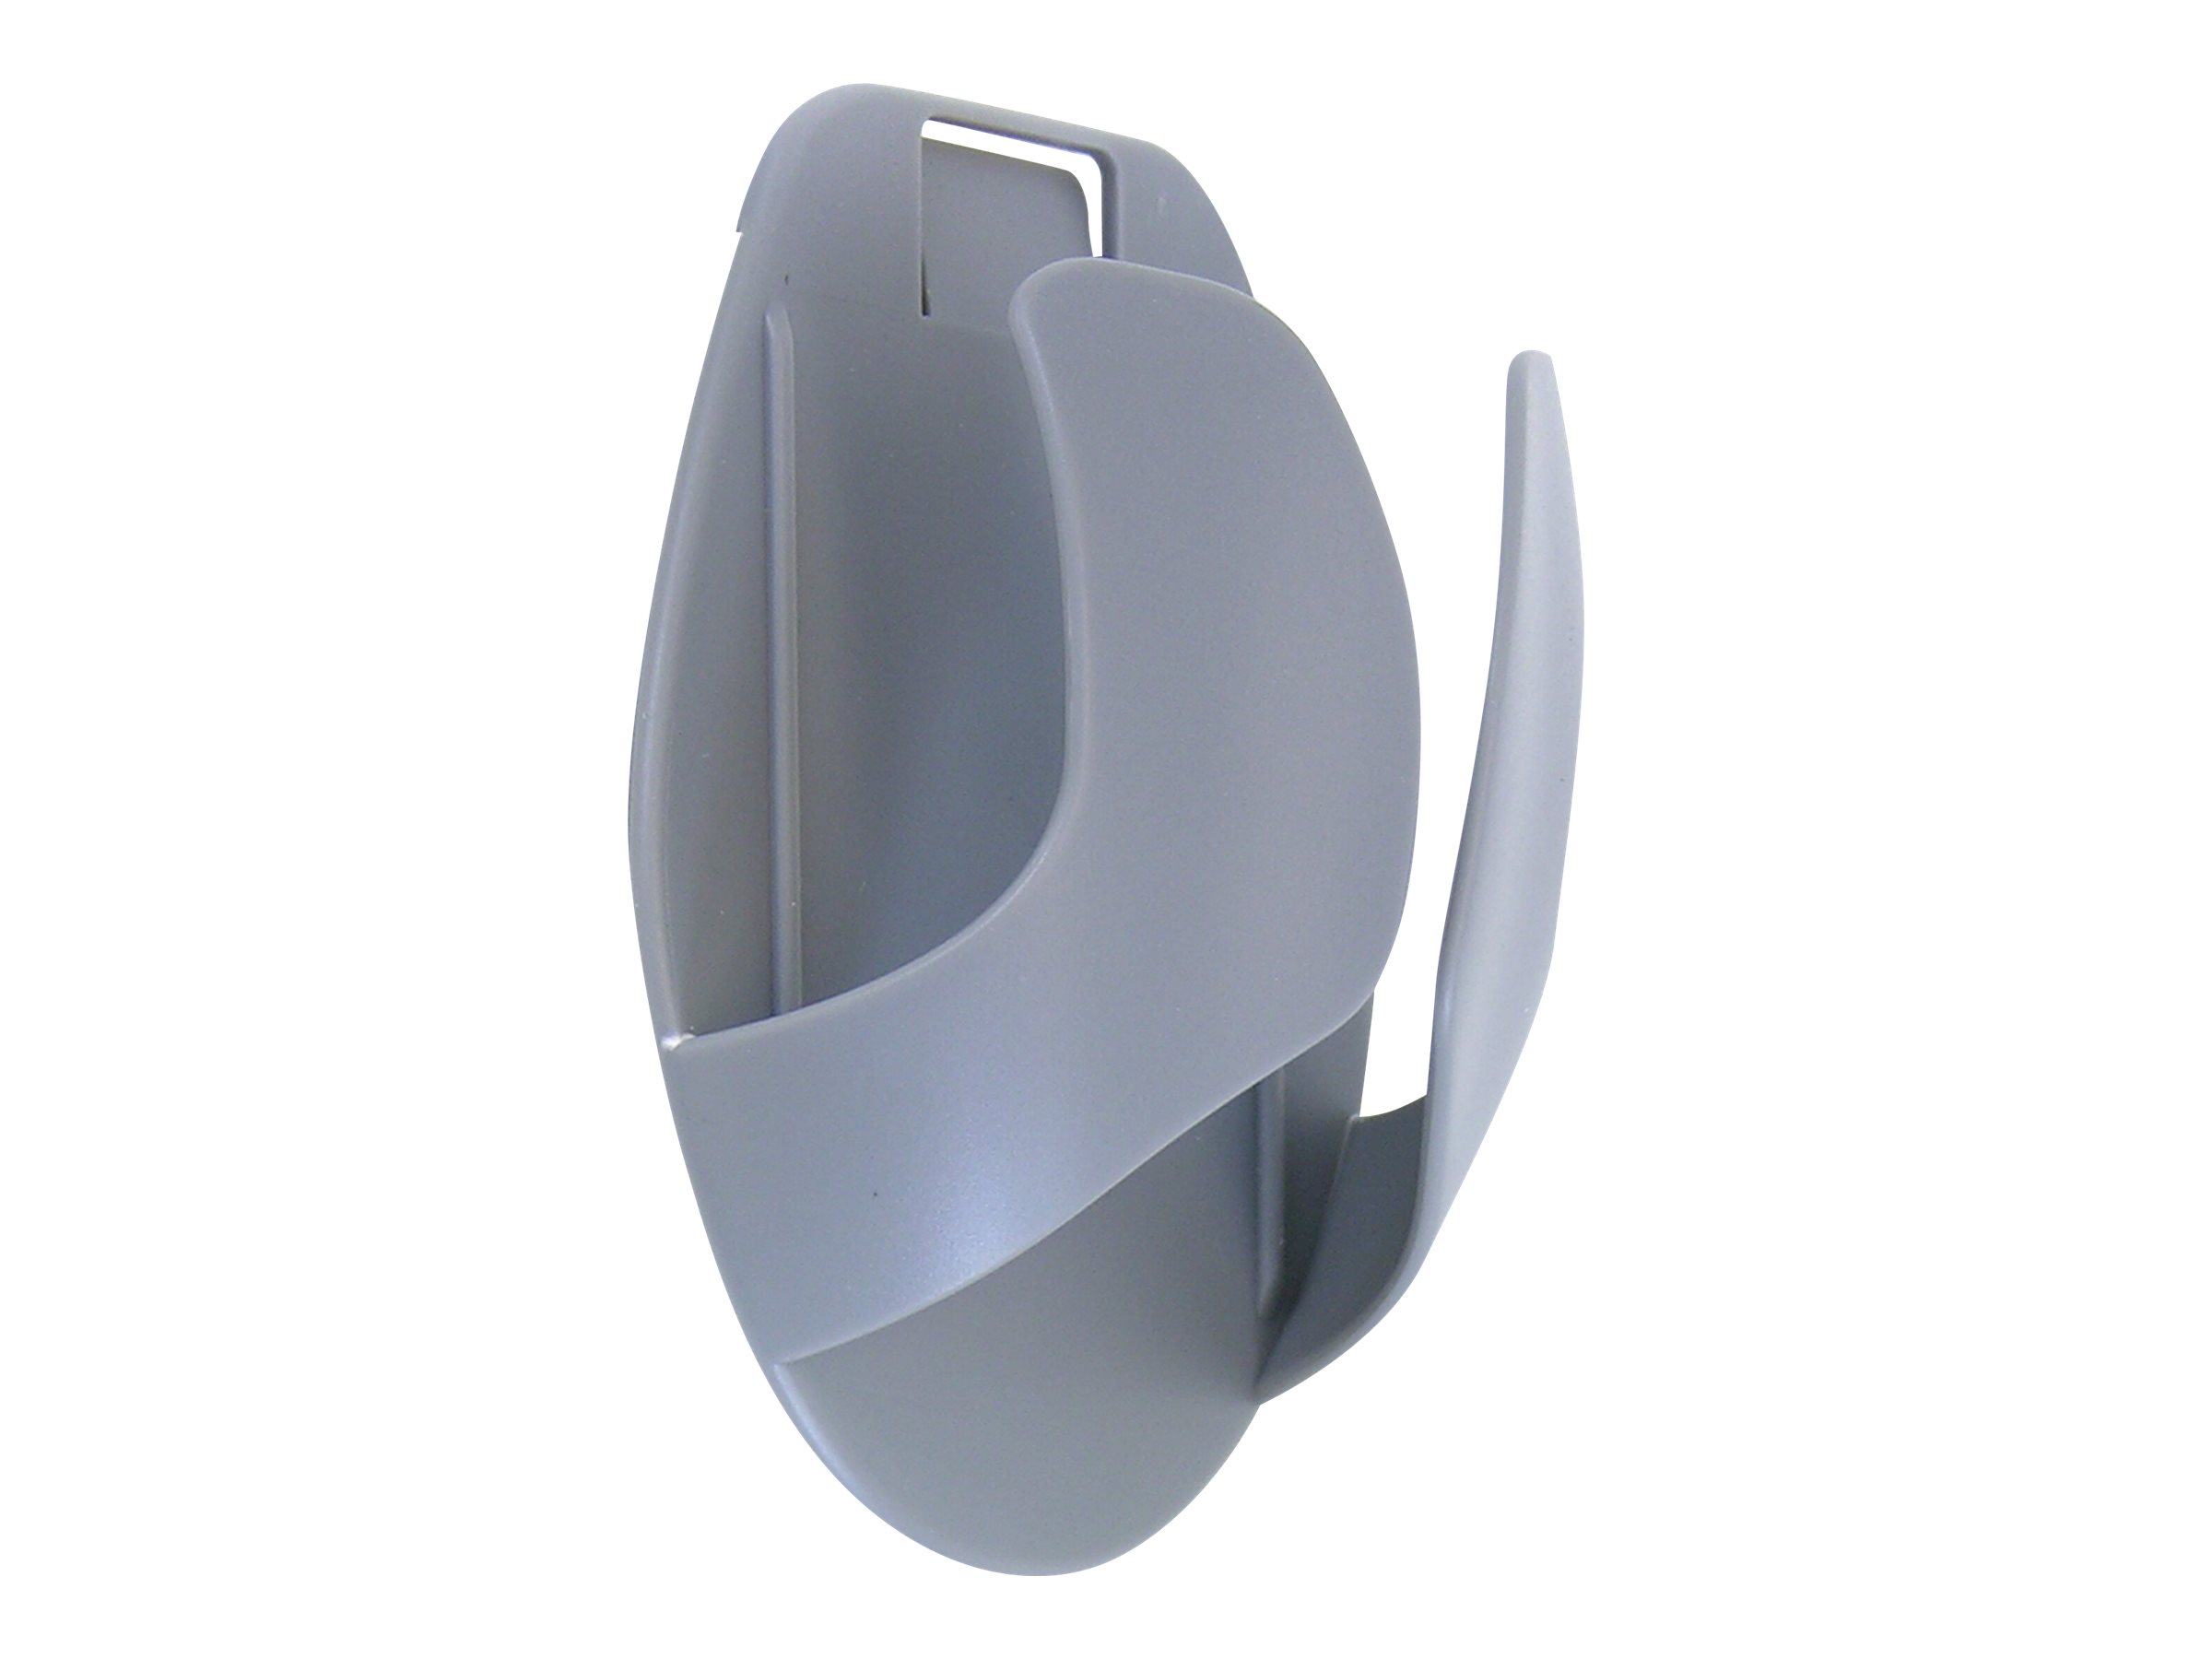 Ergotron - Porte-souris - montable en surface - gris foncé - 99-033-064 - Accessoires pour clavier et souris